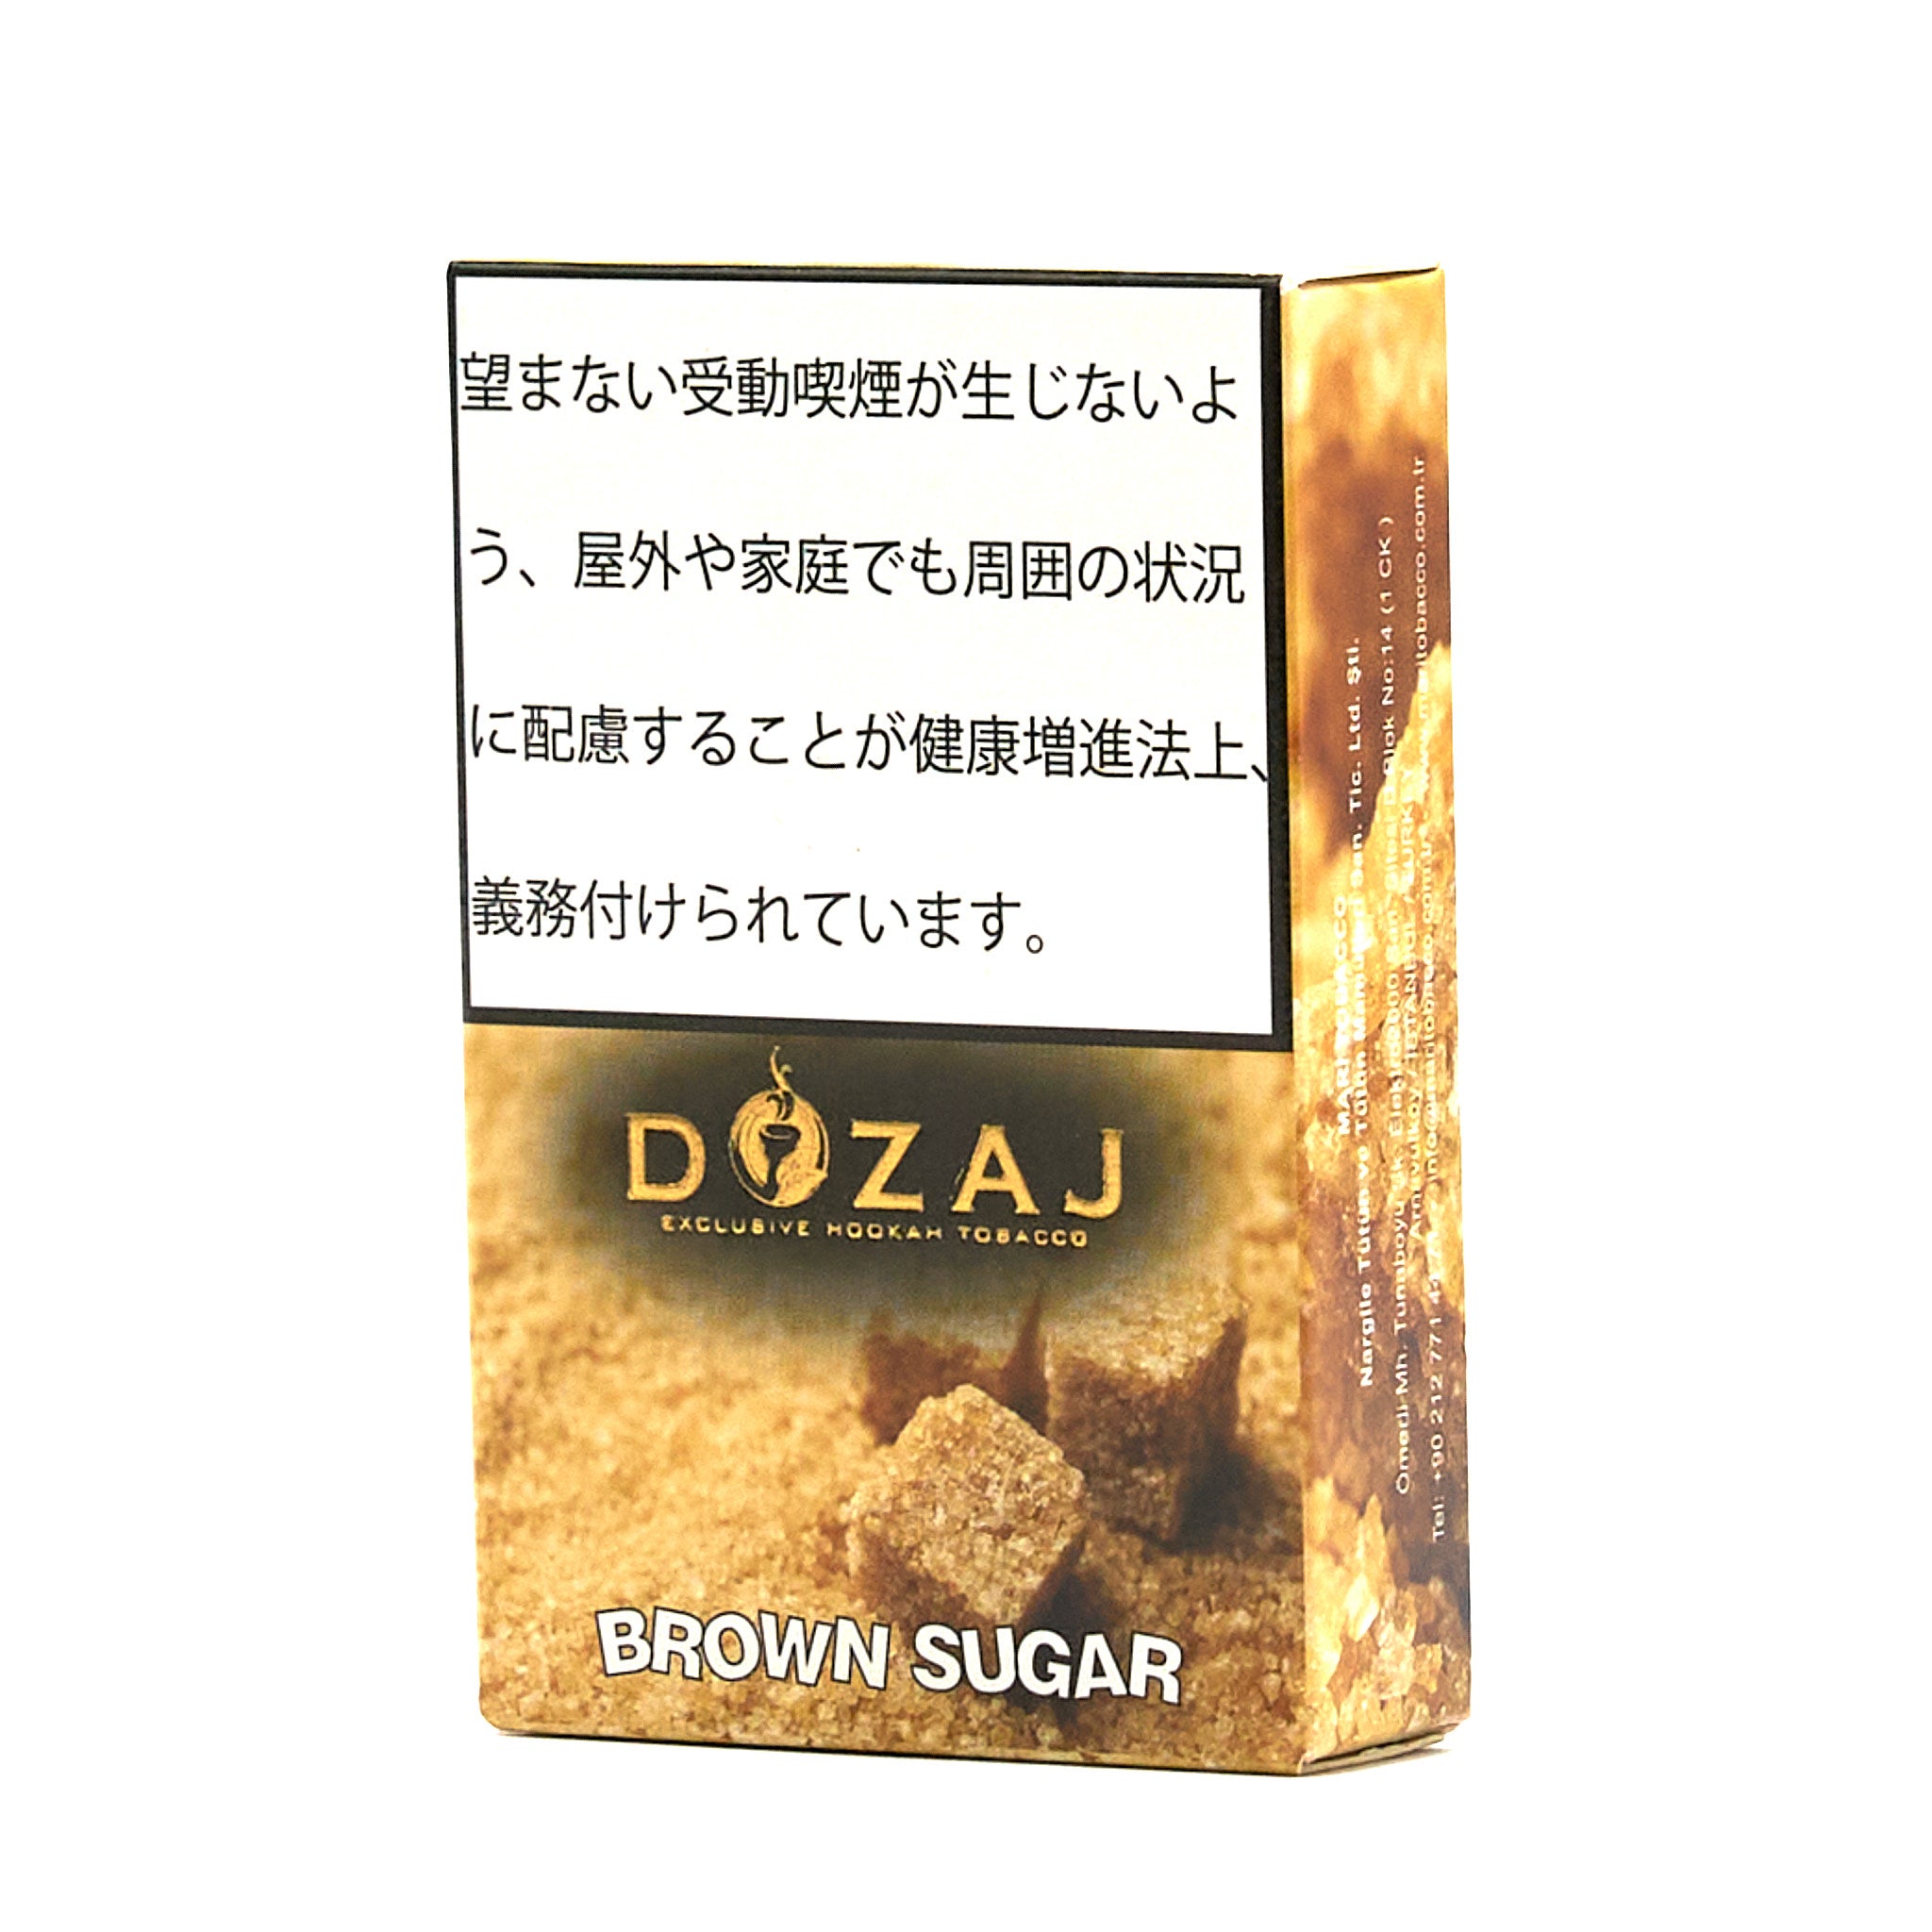 Brown Sugar / ブラウンシュガー (50g)